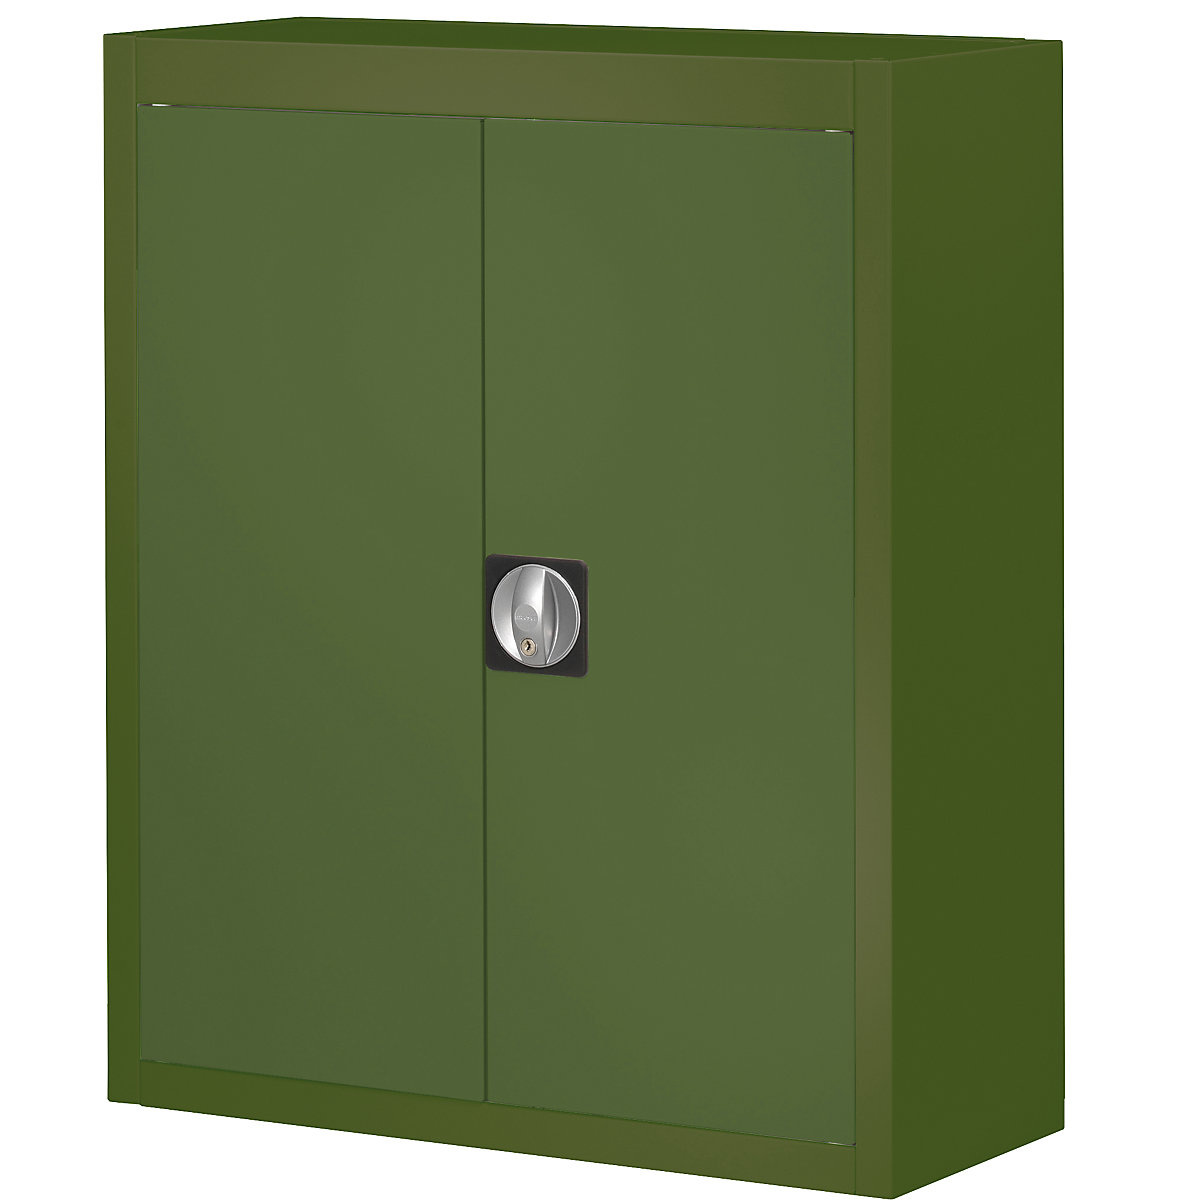 Skladová skříň, bez přepravek s viditelným obsahem – mauser, v x š x h 820 x 680 x 280 mm, jednobarevná, zelená-5